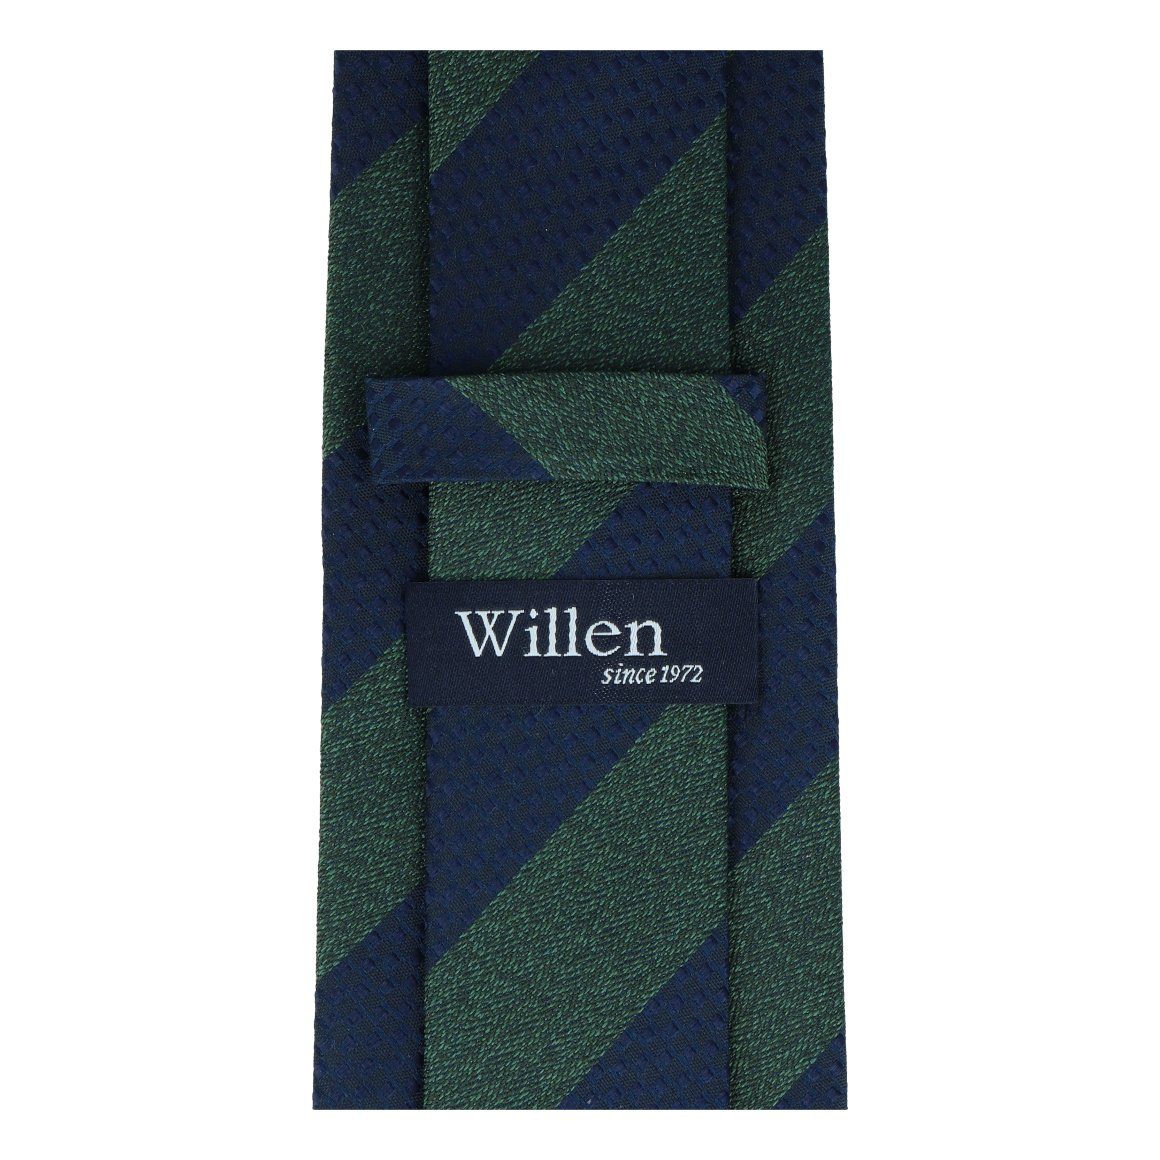 Krawatte WILLEN grün